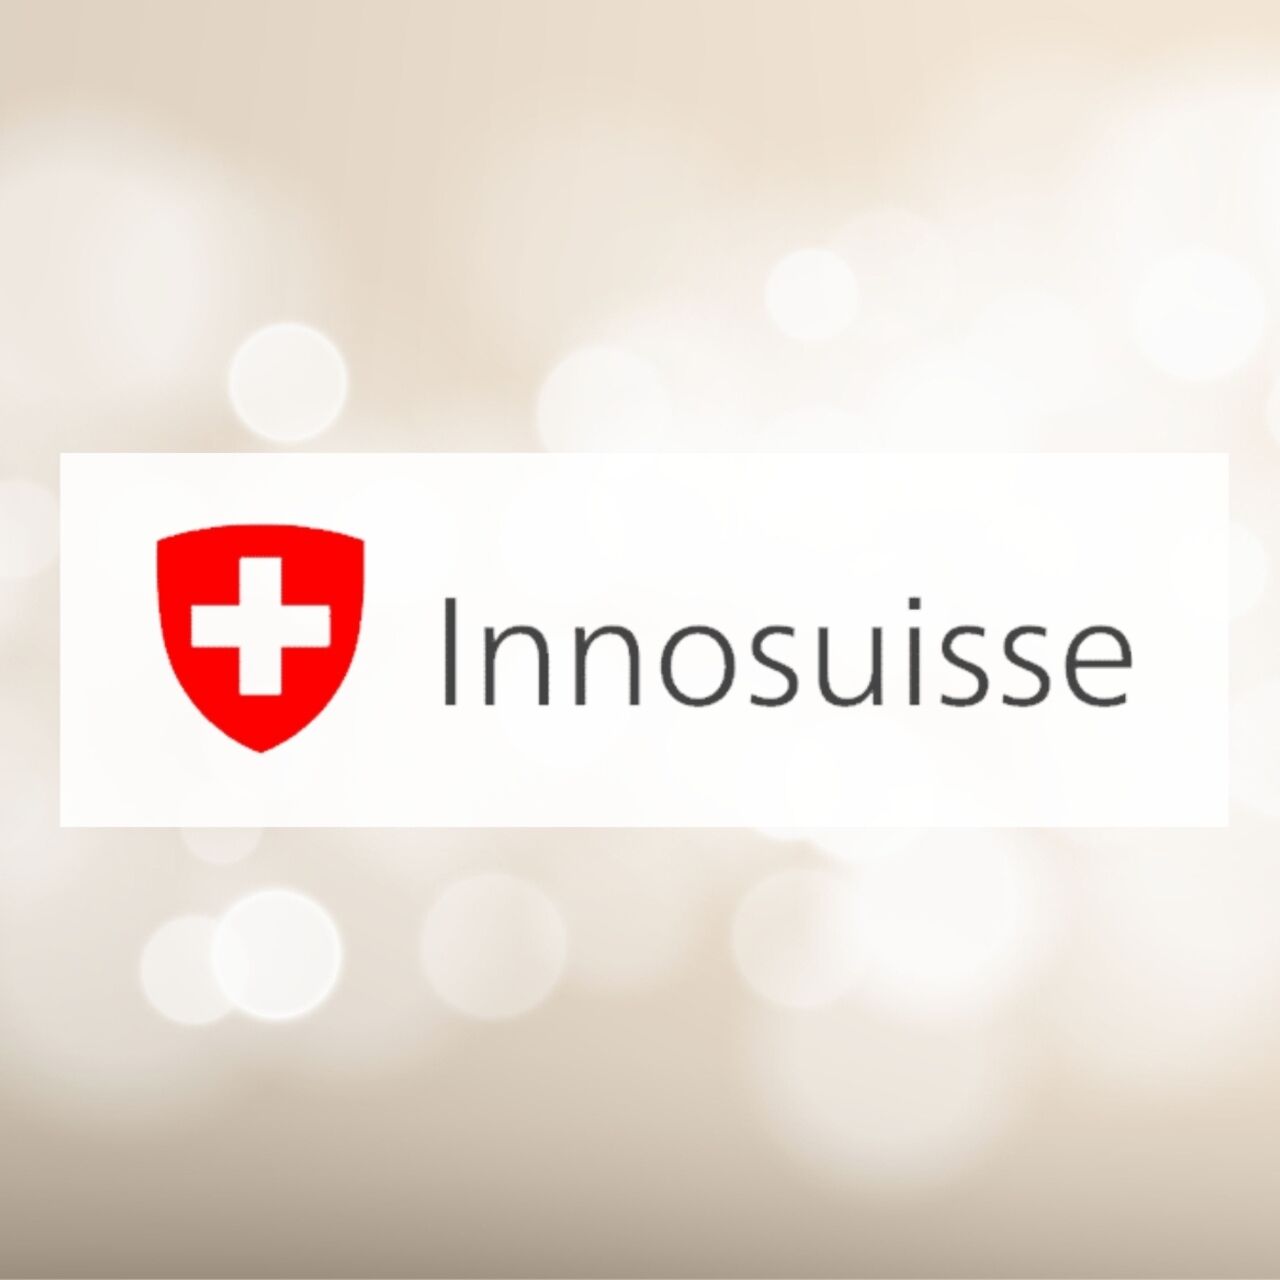 इनोसुइस: इनोवेशन को बढ़ावा देने के लिए स्विस एजेंसी